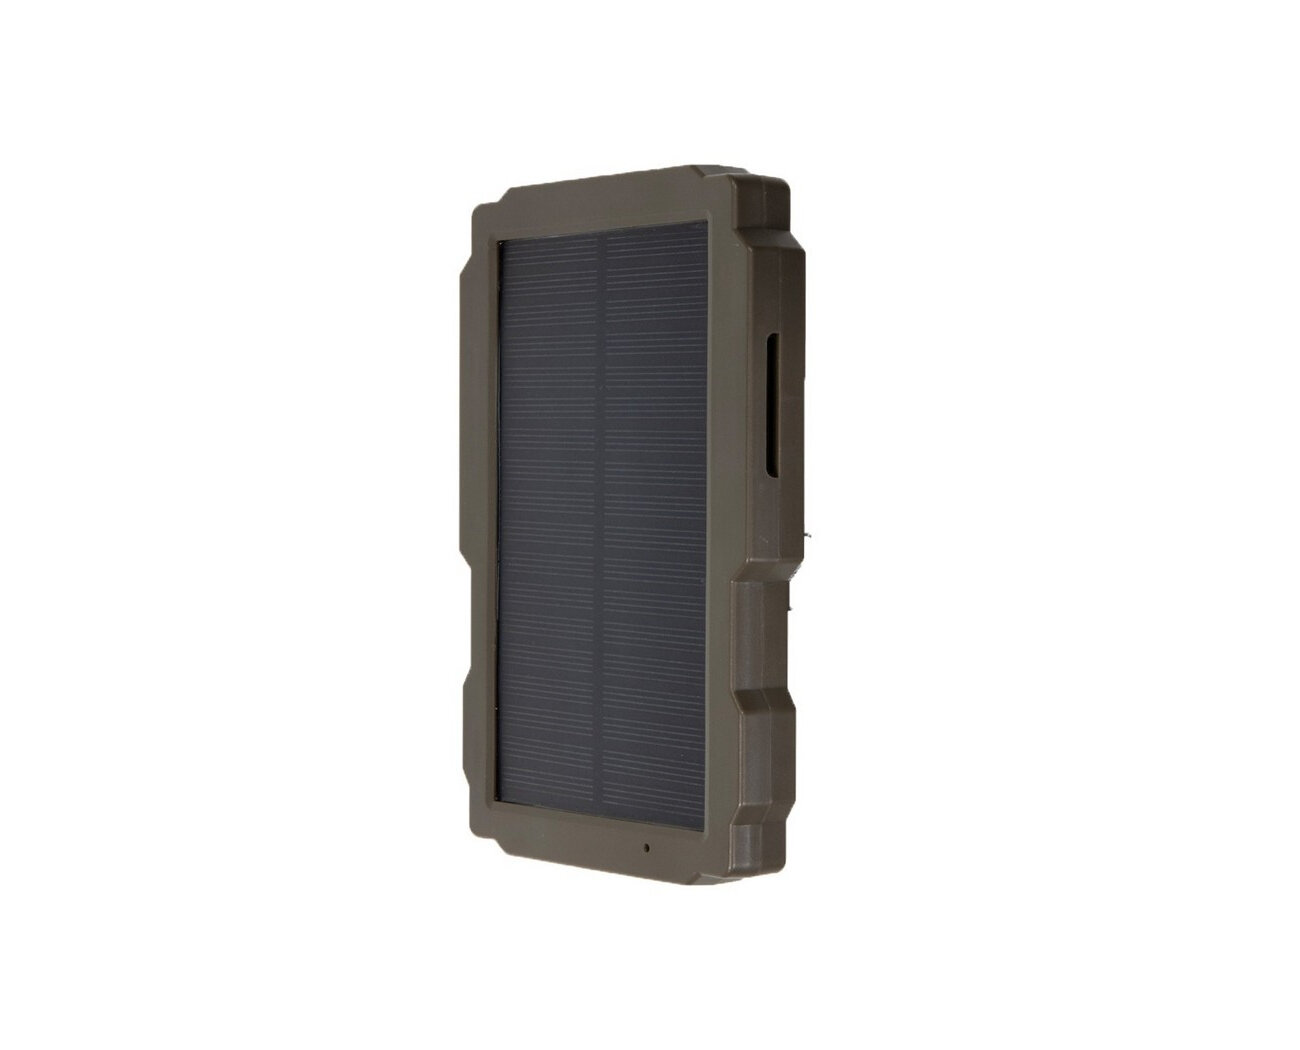 СП-08 Модель: Дуал (F1583EU) - солнечные батареи для камеры солнечная батарея для камеры видеонаблюдения - выходное напряжение 6 и 12 В